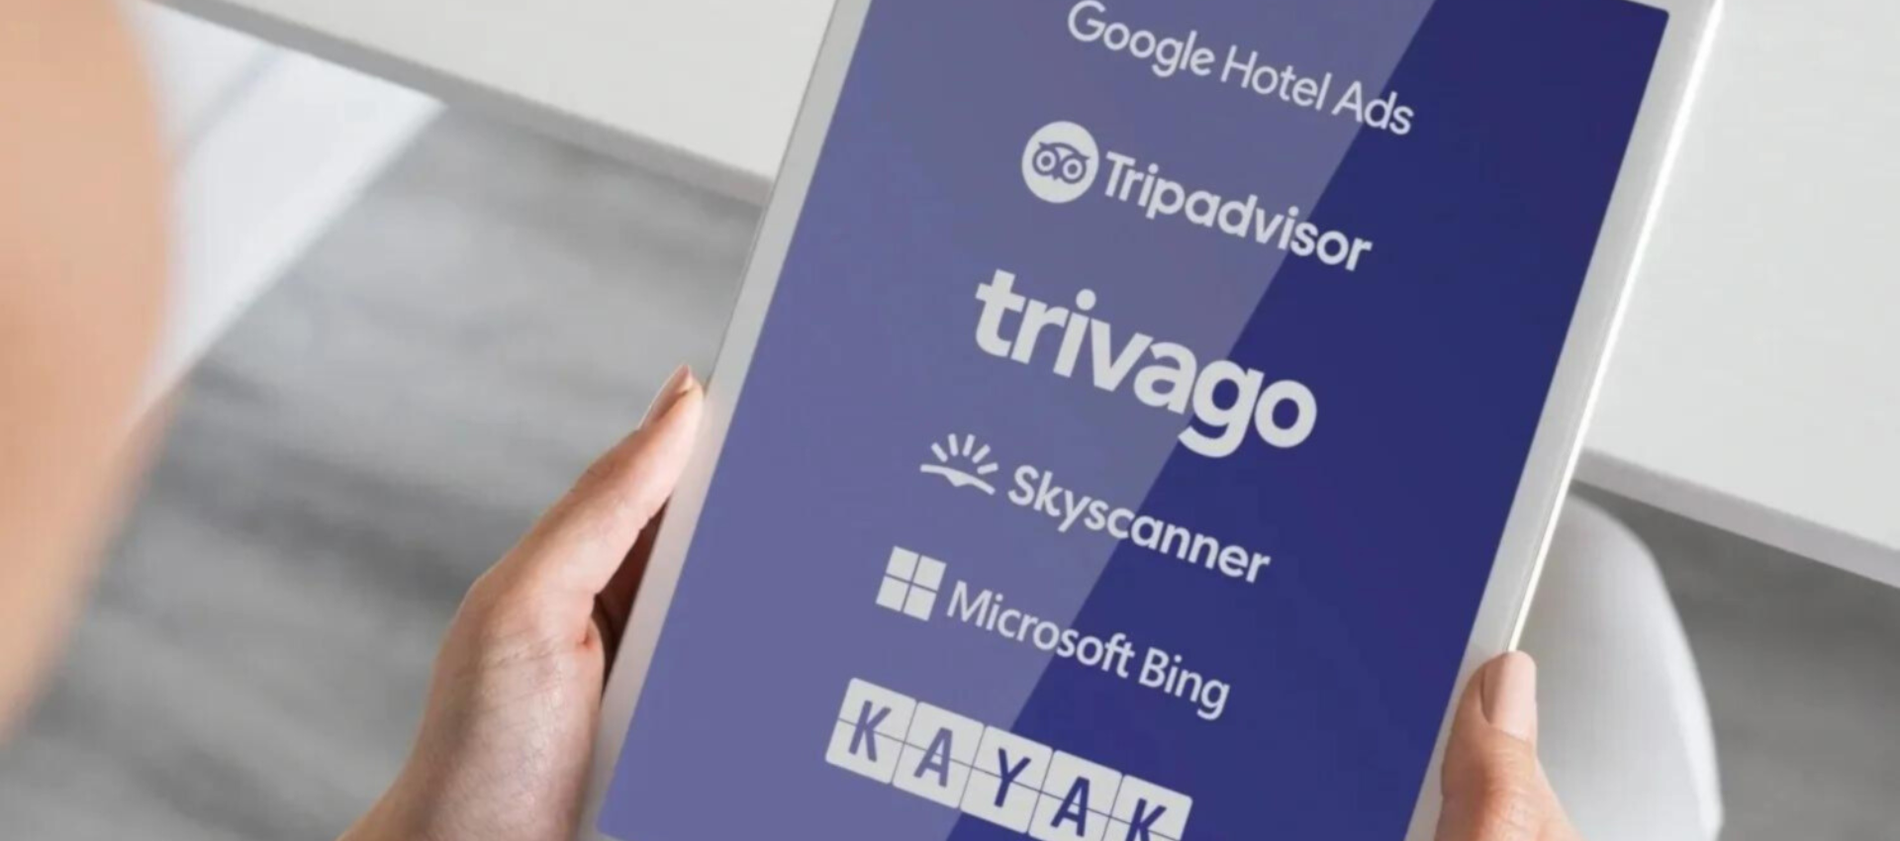 una persona sostiene una tableta con los logos de google hotel ads tripadvisor triviago skyscanner y microsoft bing